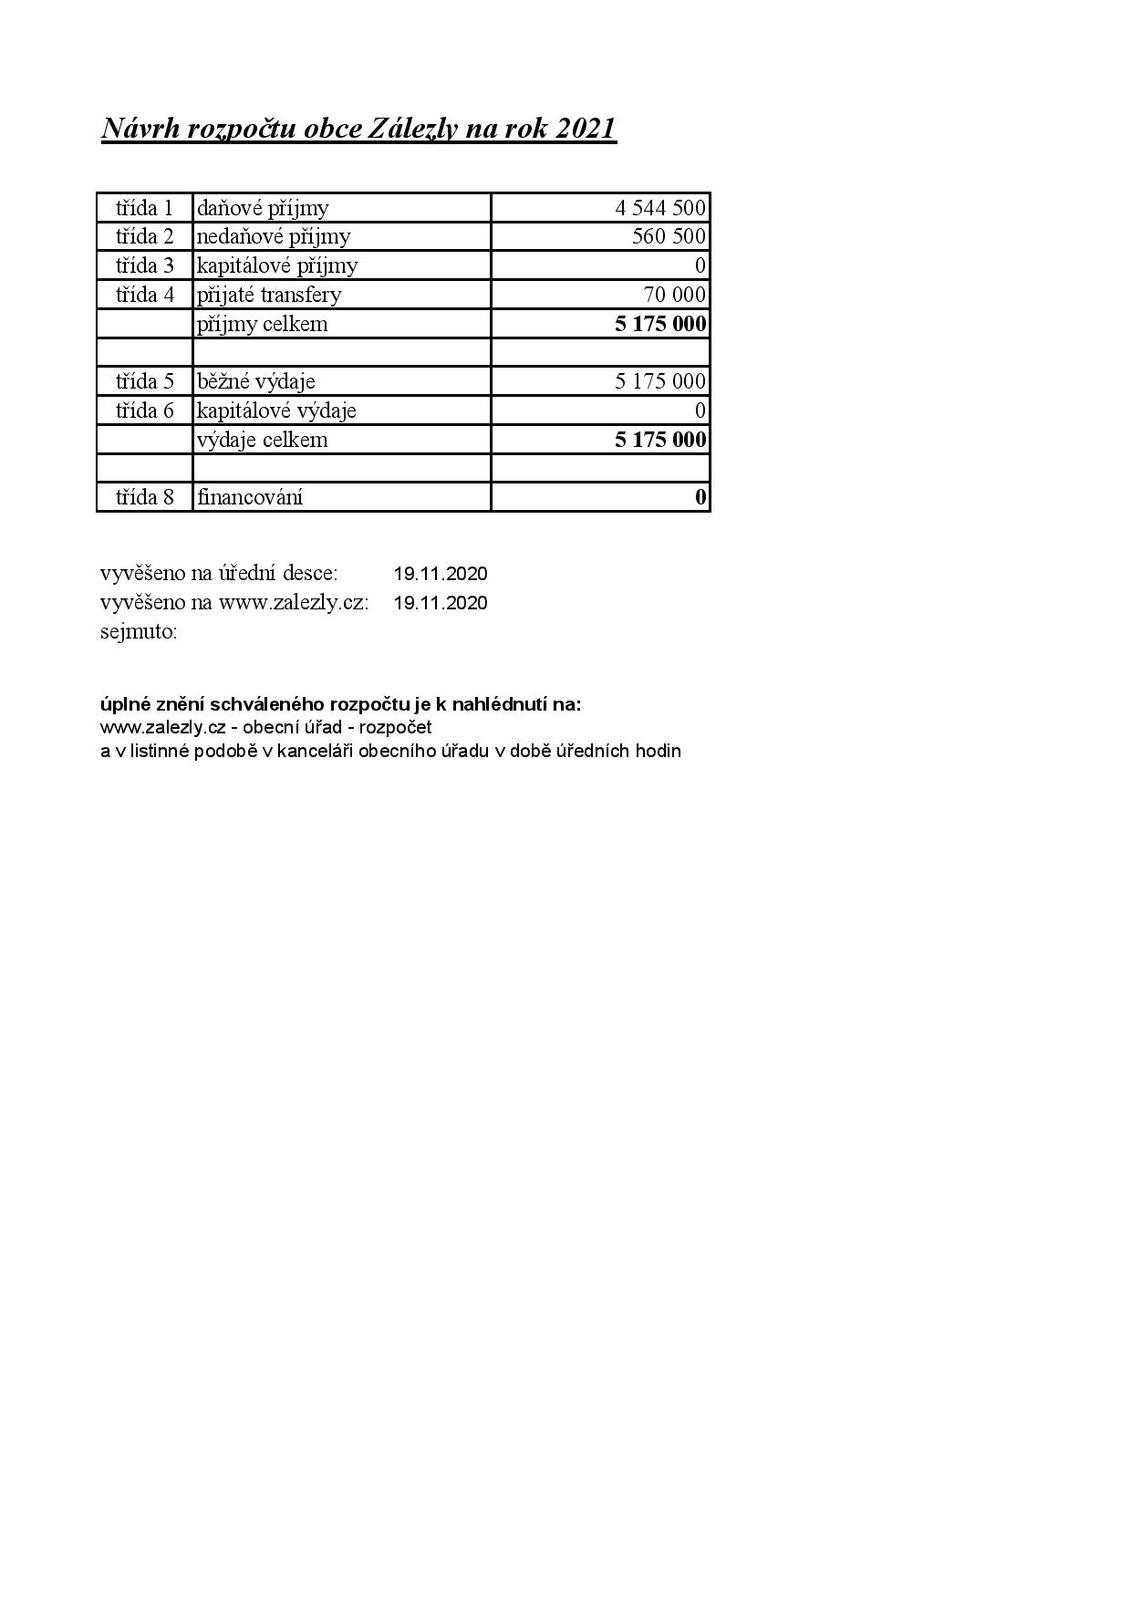 Návrh rozpočtu obce Zálezly na rok 2021 (úřední deska)_1-page-001.jpg